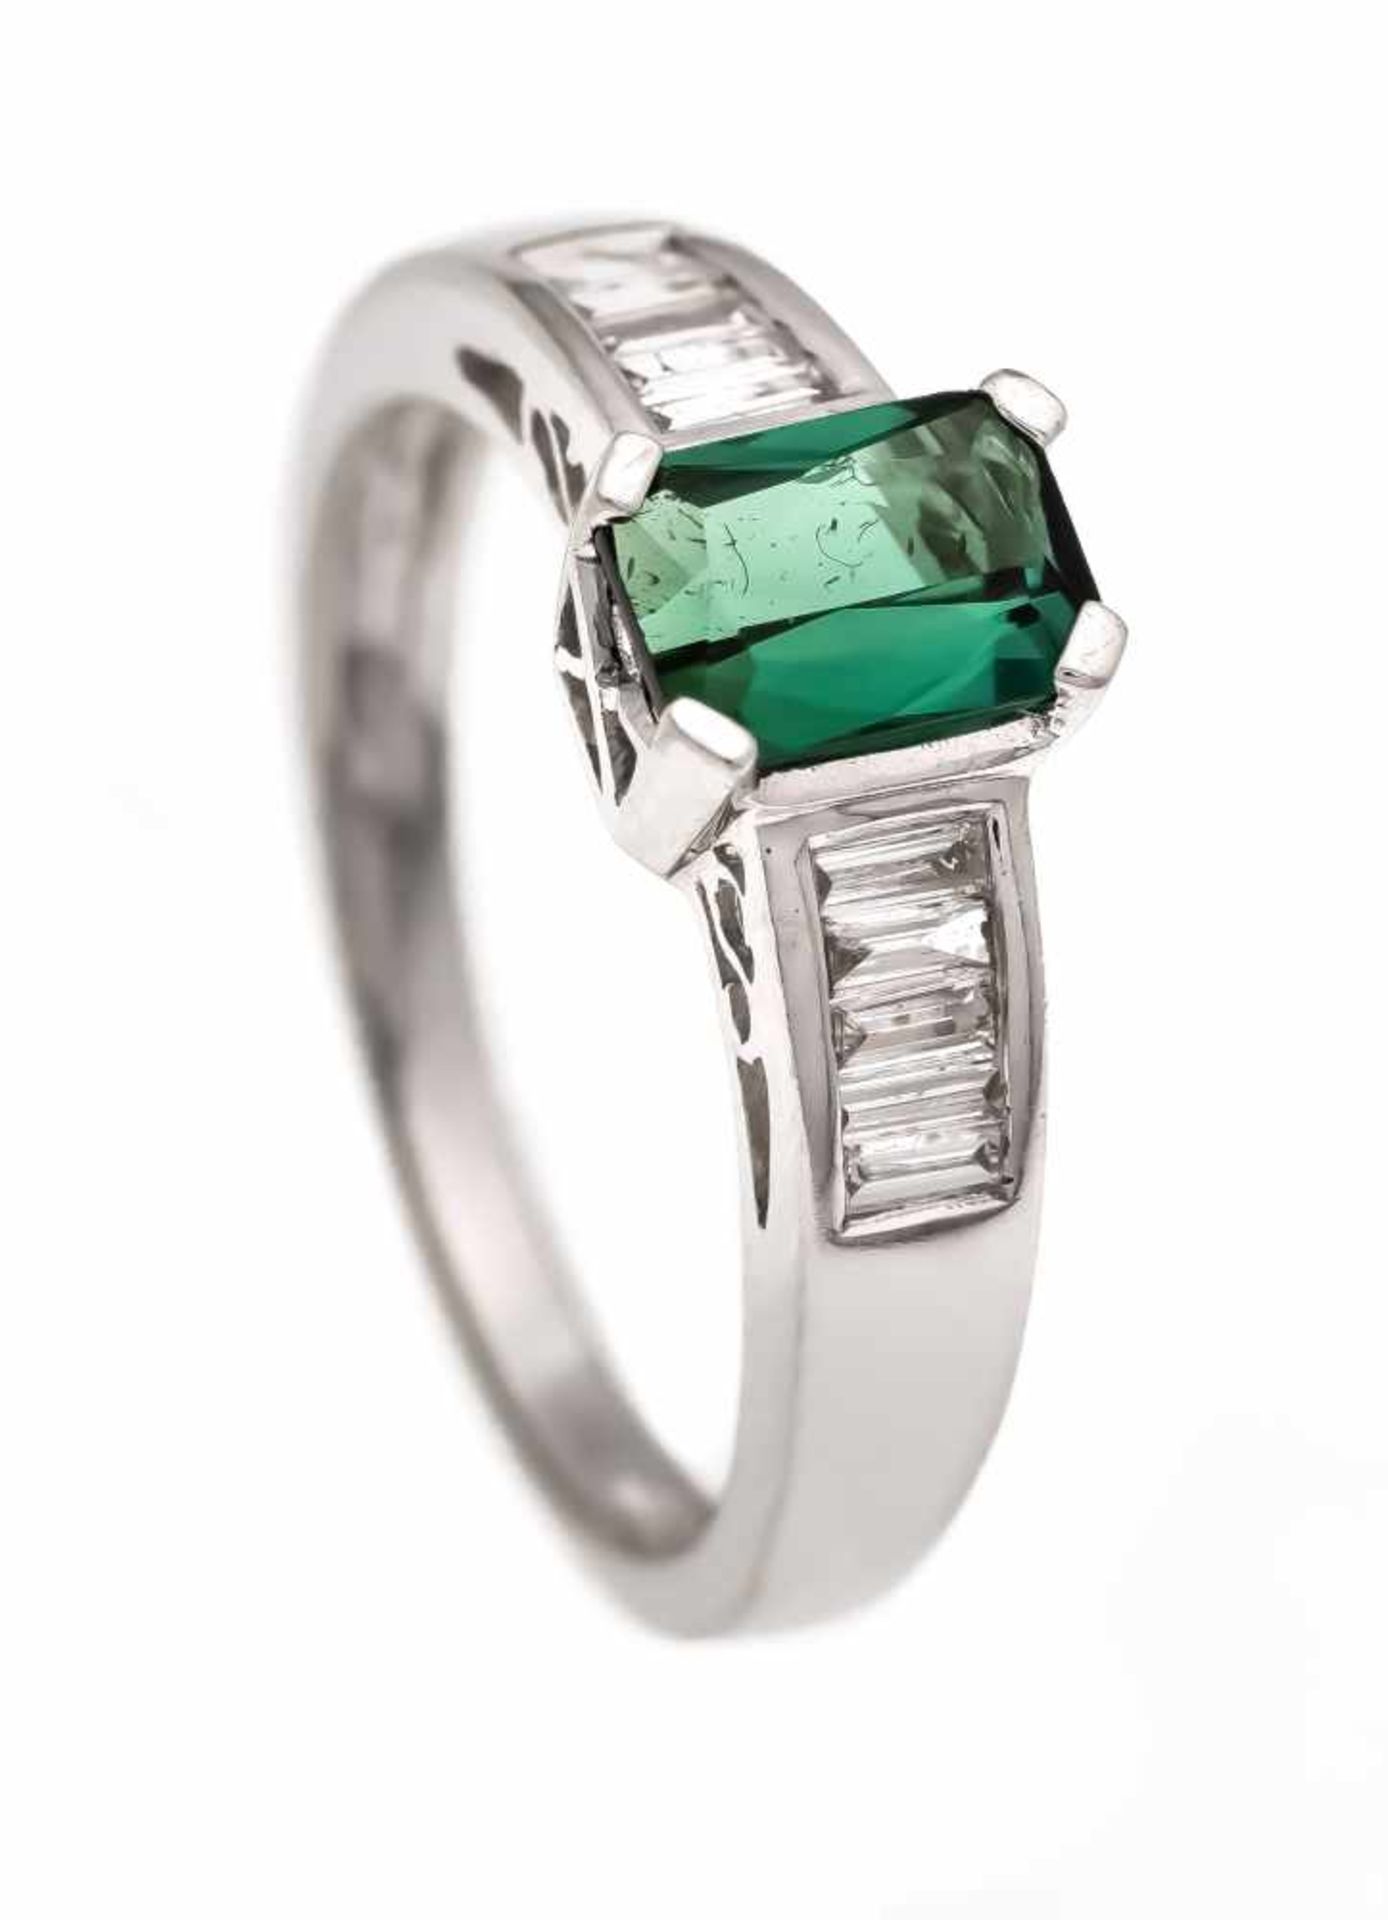 Turmalin-Diamant-Ring WG 585/000 mit einem feinen fac. Turmalin 7 x 5 mm in exzellenterFarbe und